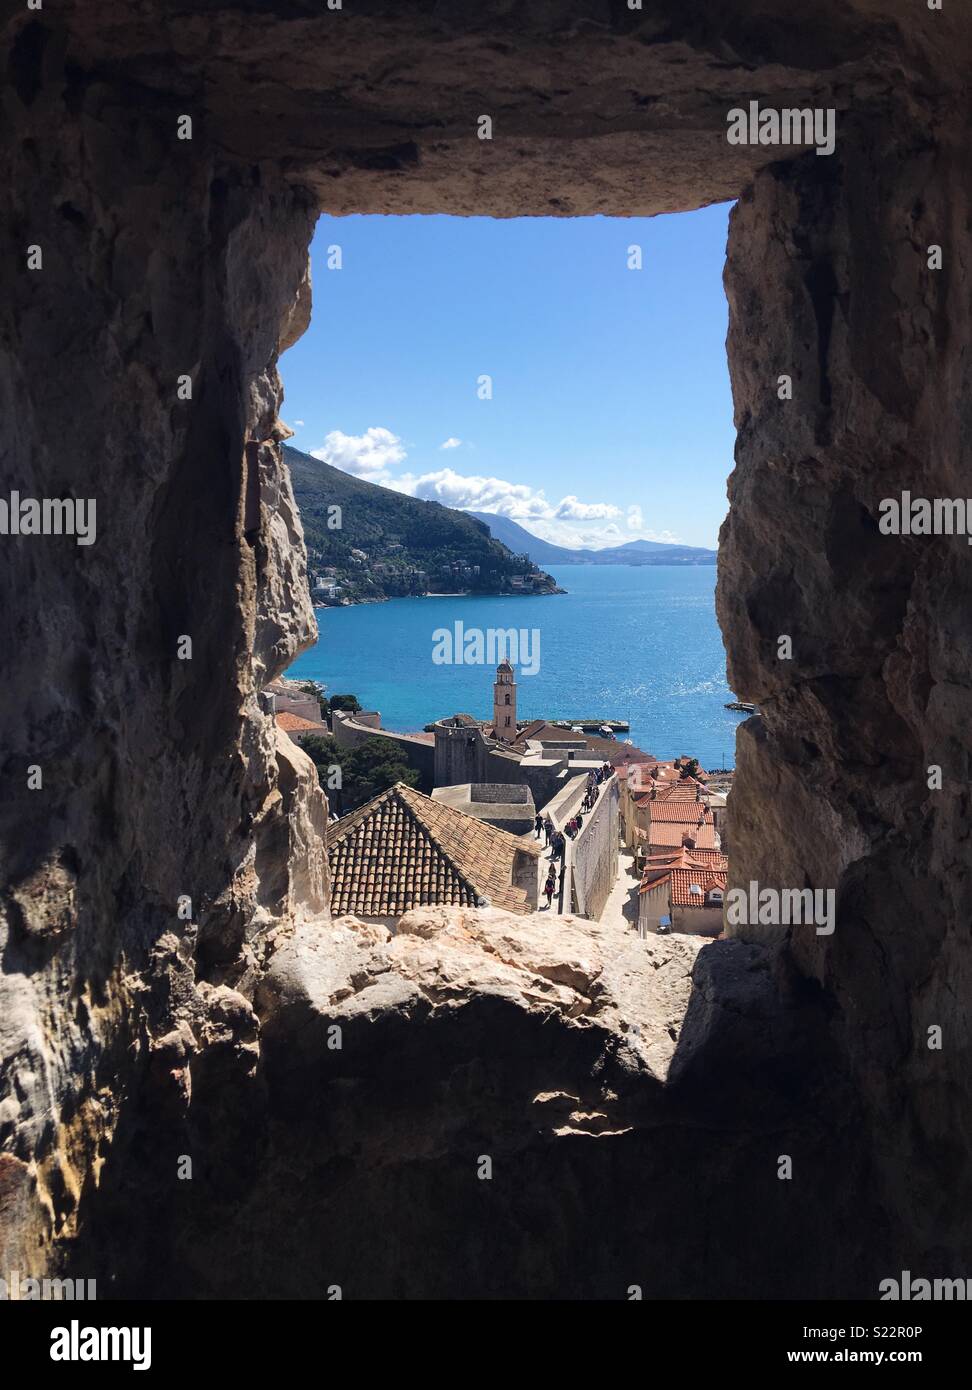 Paese vecchio di Dubrovnik e l'adriatico attraverso una finestra nelle mura della città Foto Stock